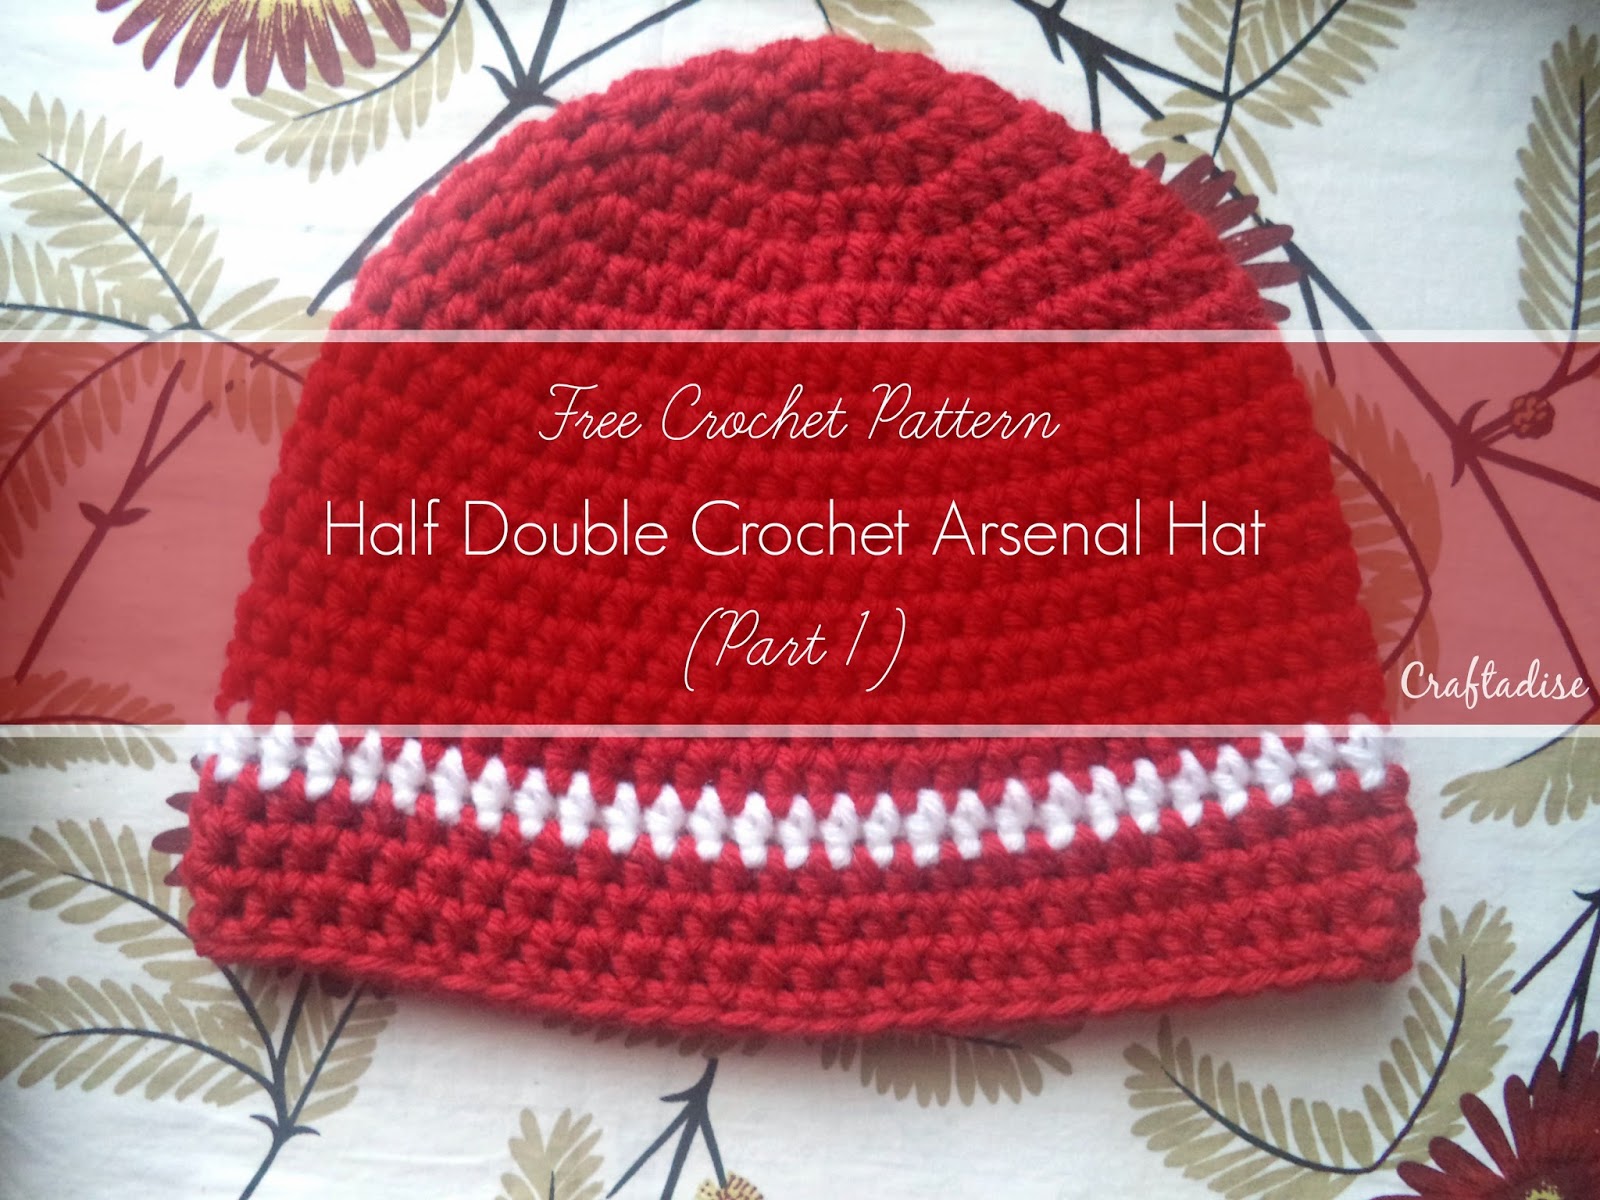 Free Crochet Pattern: Half Double Crochet Arsenal Hat - Part 1